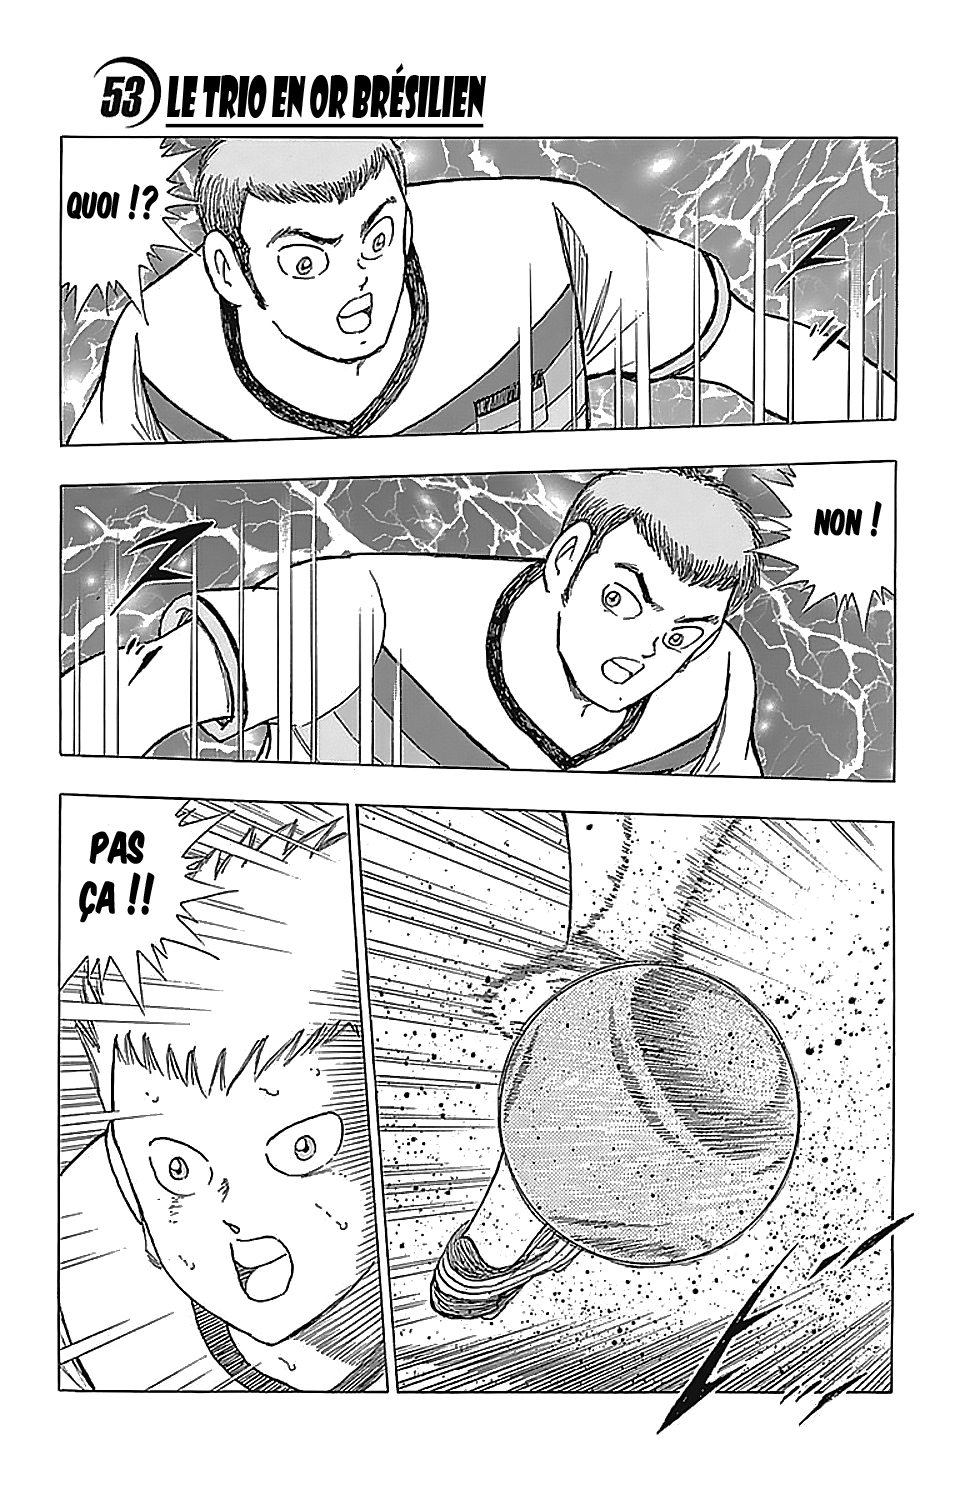 Captain Tsubasa - Rising Sun: Chapter 53 - Page 1